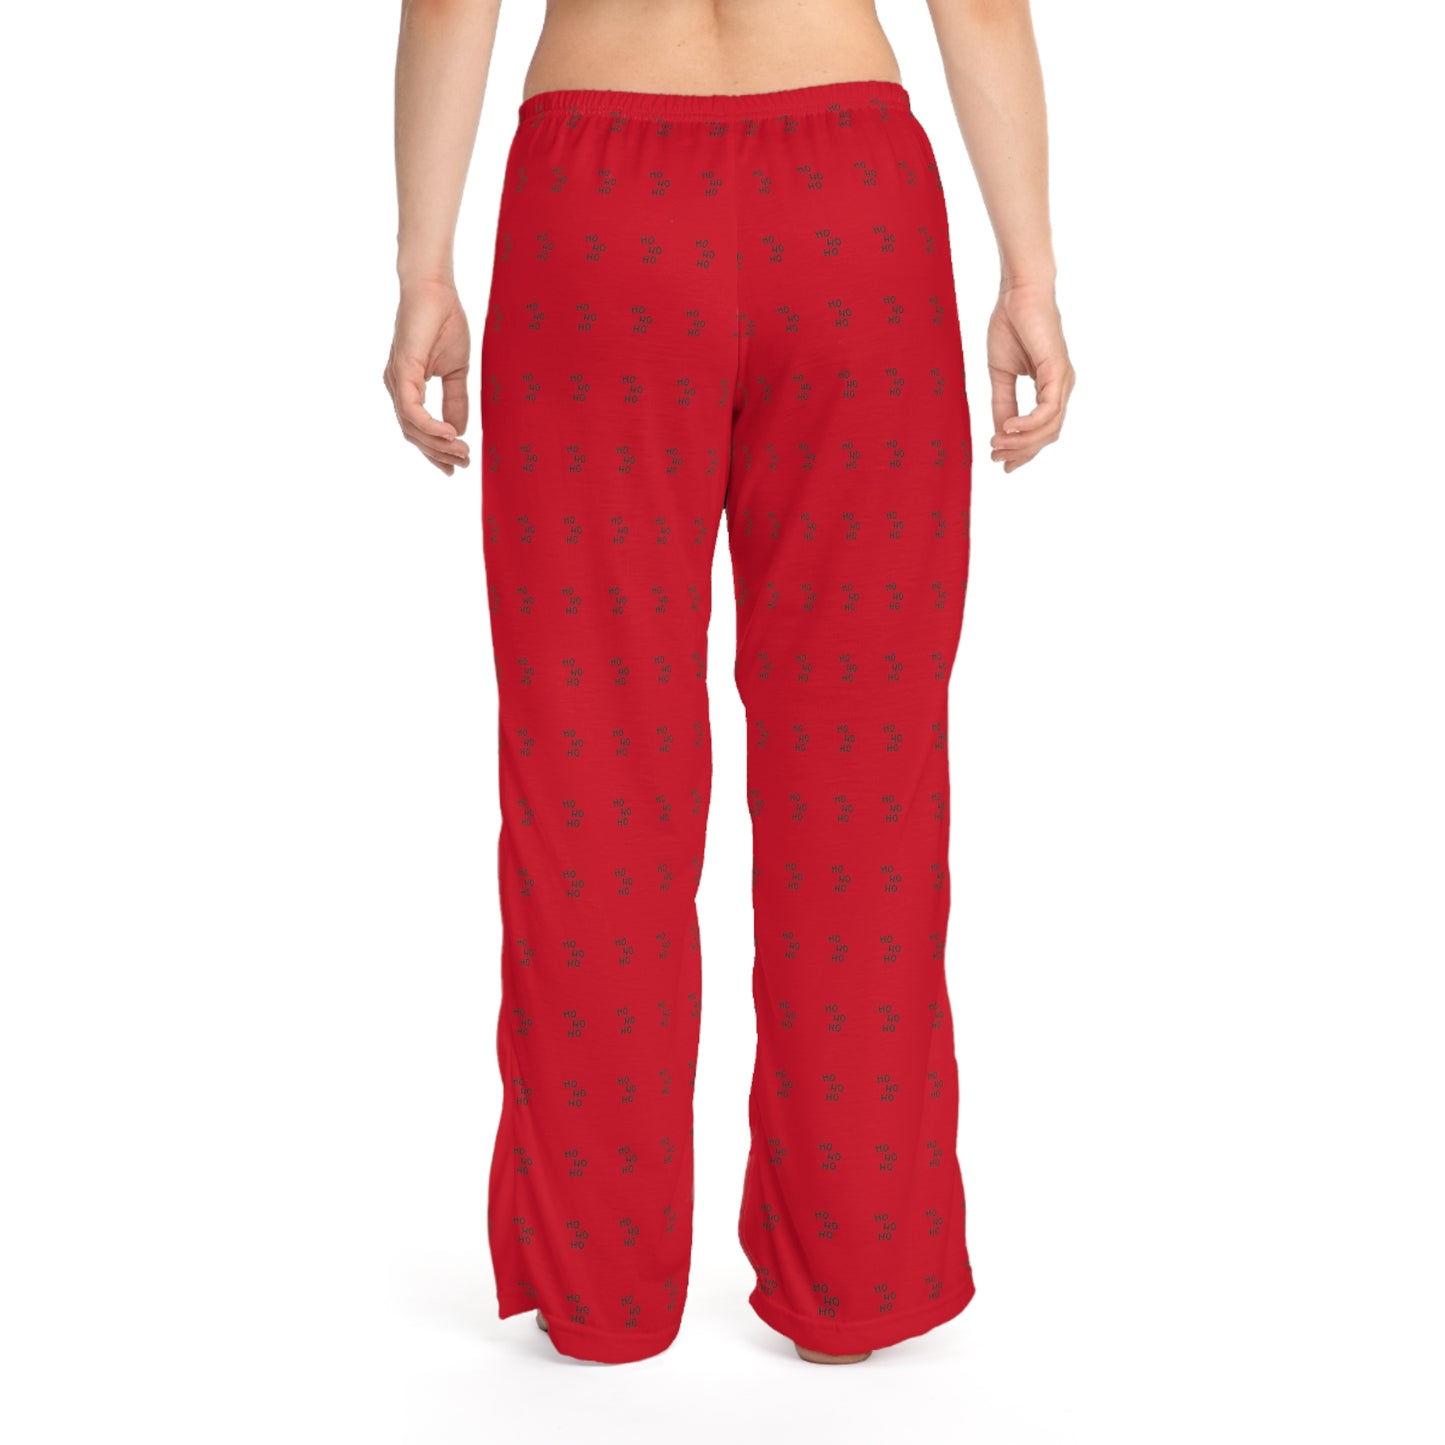 Ho Ho Ho Bottoms Women's Pajama Pants